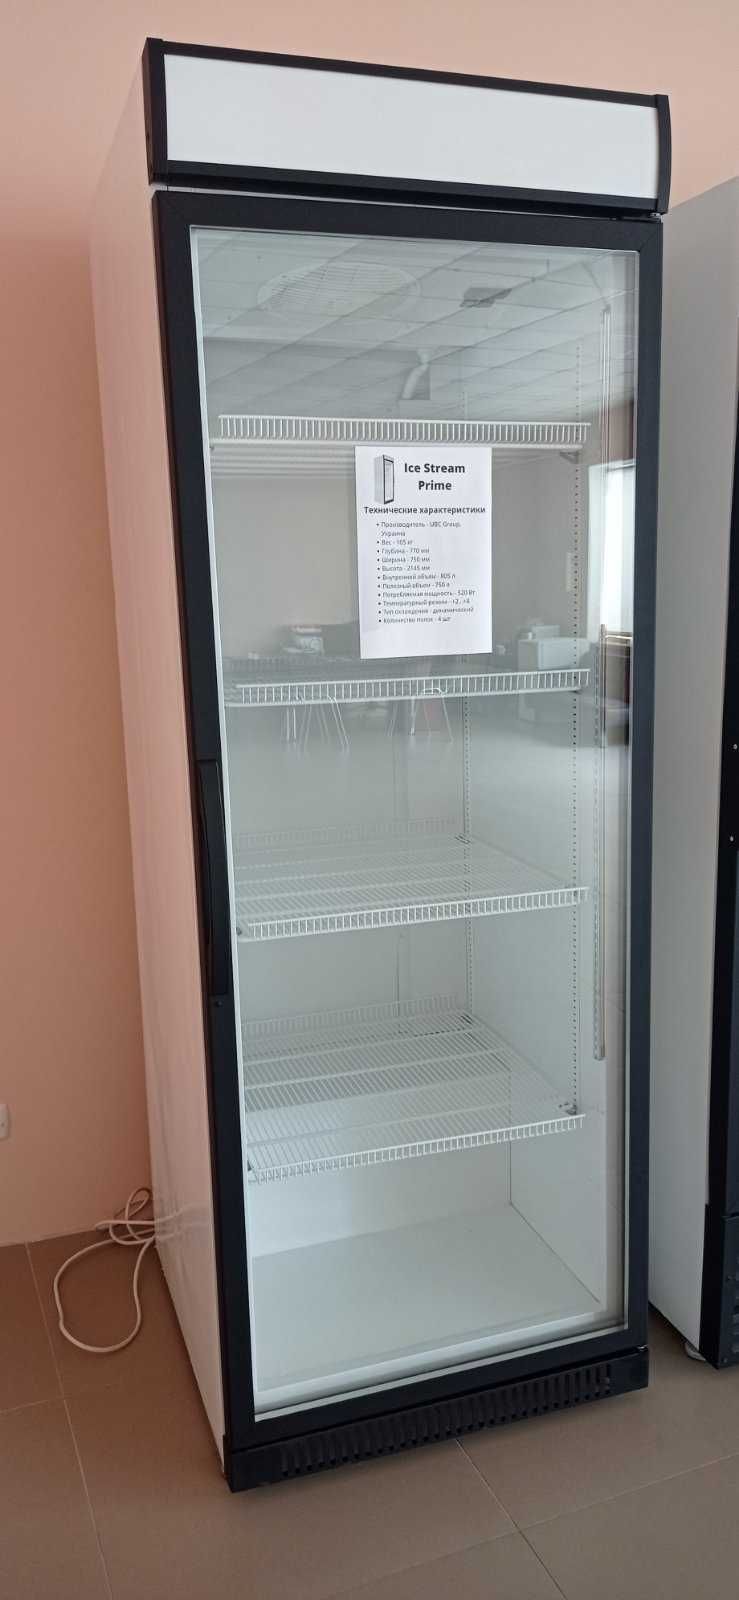 Холодильна шафа, однодверний холодильник ICE STREAM Prime